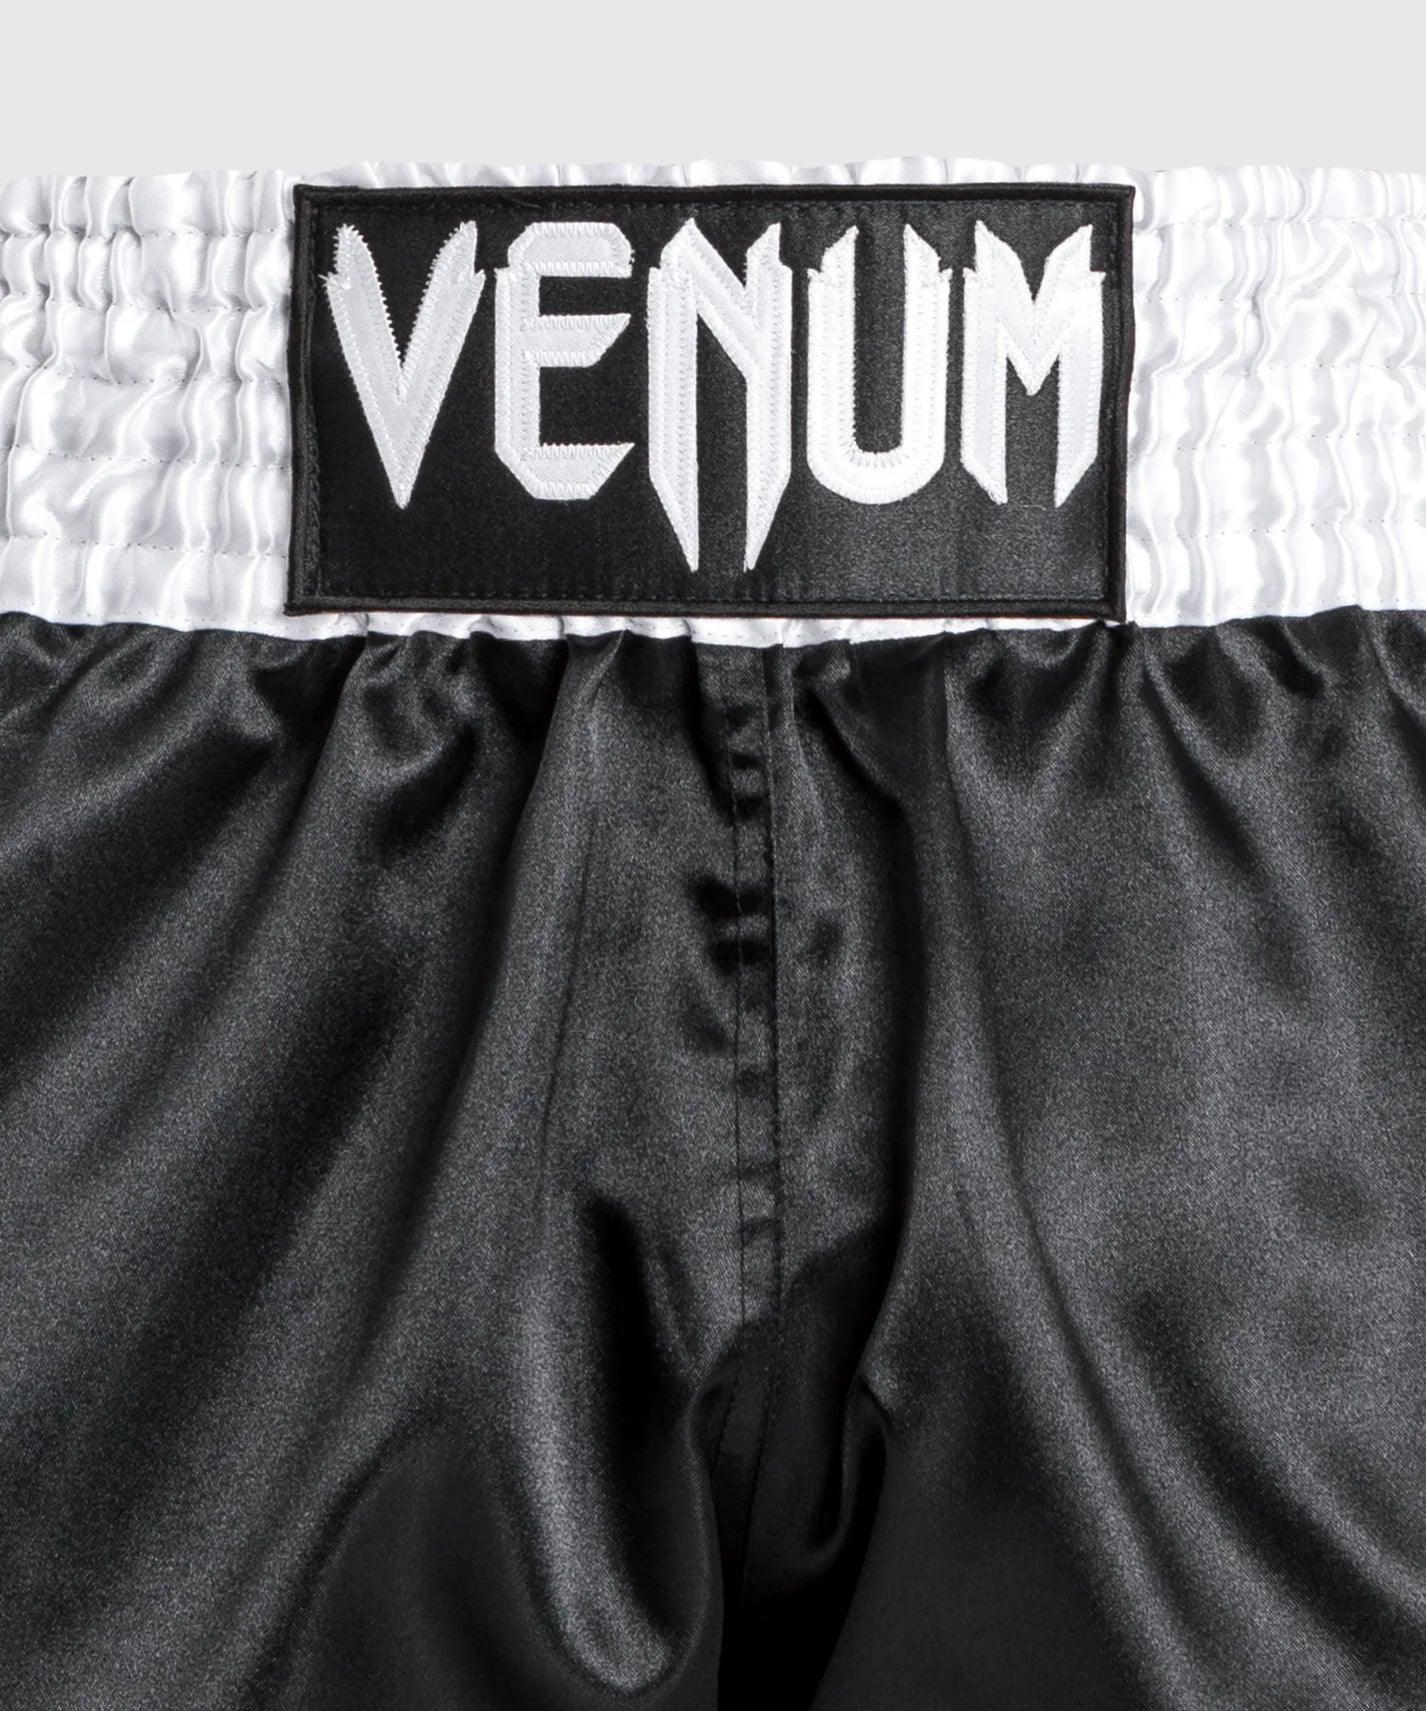 Equipement et vetement Venum : short, tshirt, gants Venum MMA